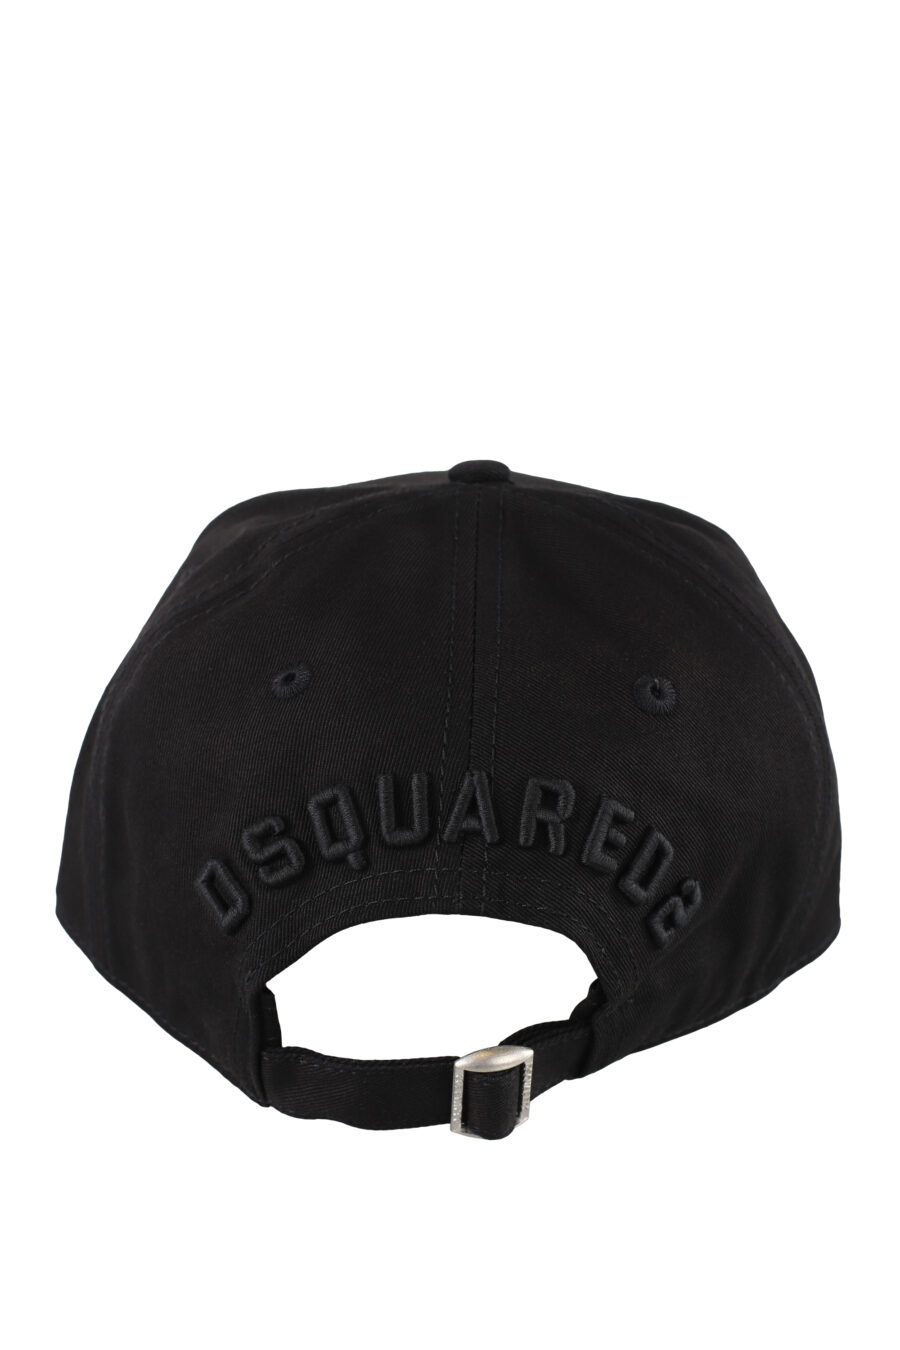 Gorra negra con logo "icon" monocromático - IMG 5168